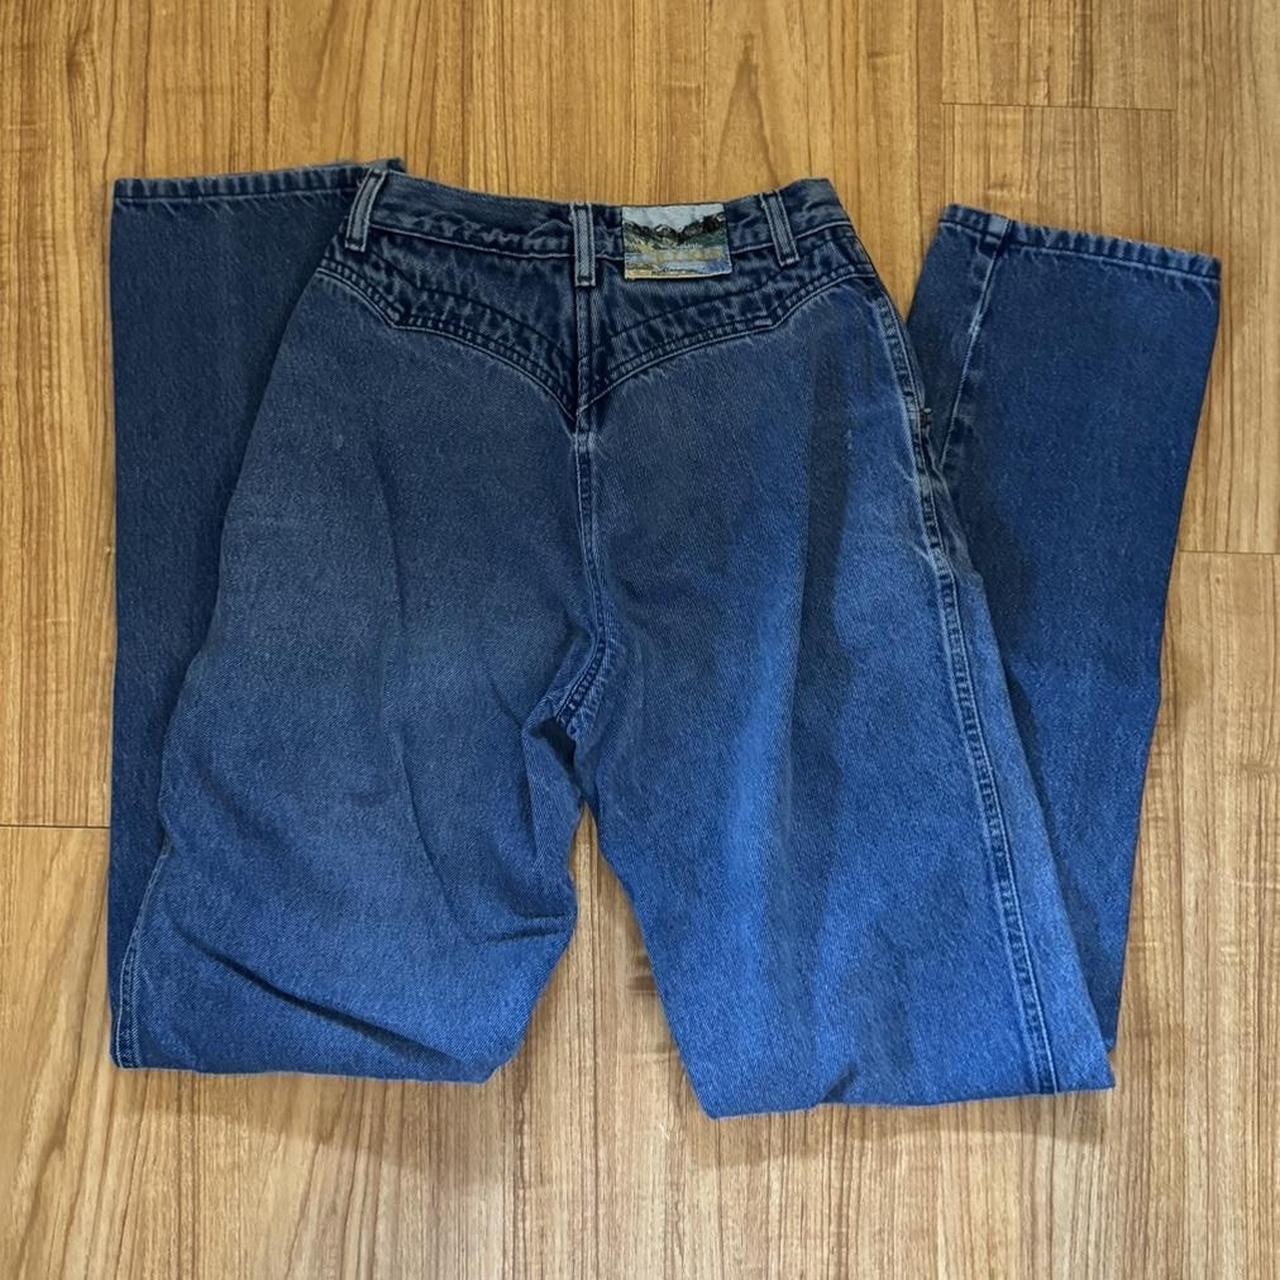 Vintage Rockies jeans -measurements shown in... - Depop